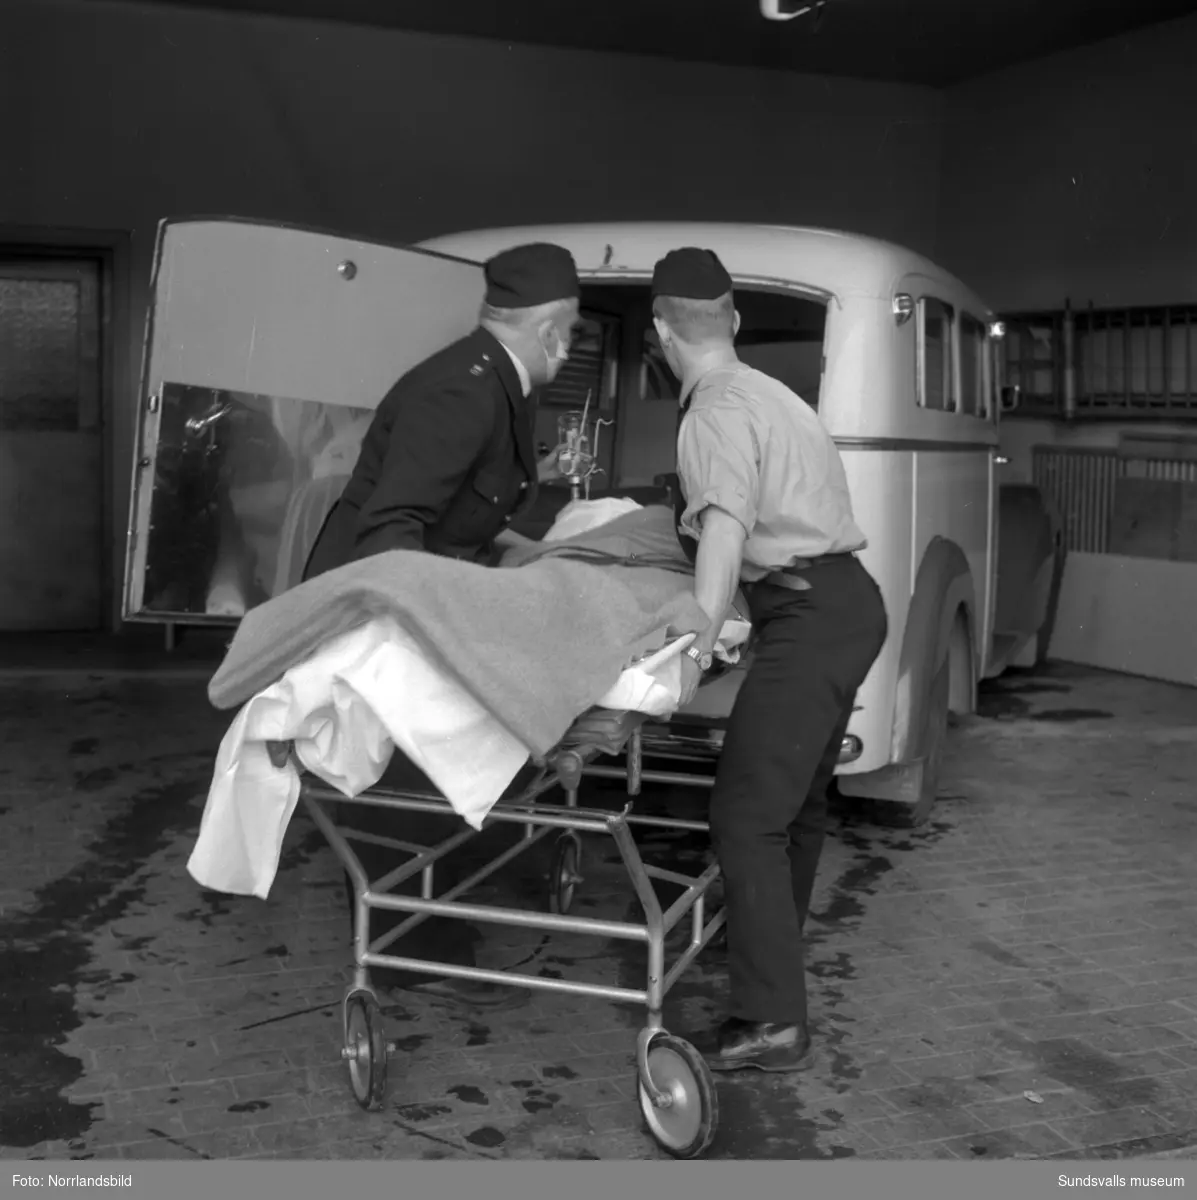 I februari 1963 inträffade en kraftig explosion i källaren på Corona-bageriet vid Landsvägsallén. Nio personer skadades, varav fyra allvarligt, och personalen hade tidigare på dagen känt kraftig gaslukt. Ett 100-tal fönster trycktes ut och på bilderna ses bland annat förödelsen i omklädningsrummen.